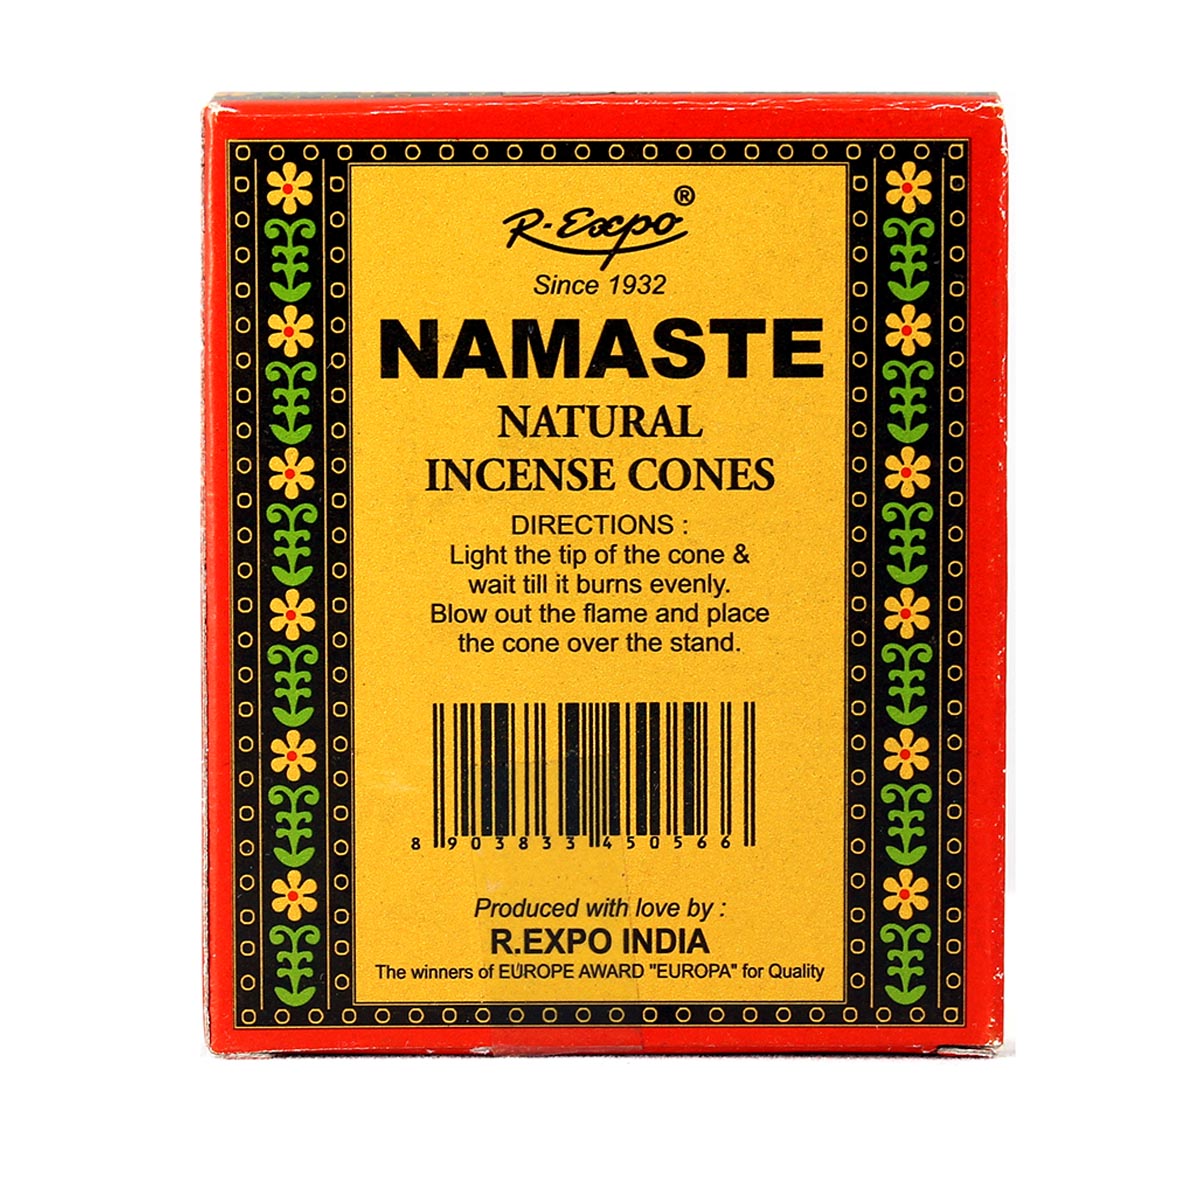 Back of Namaste Kama Sutra box